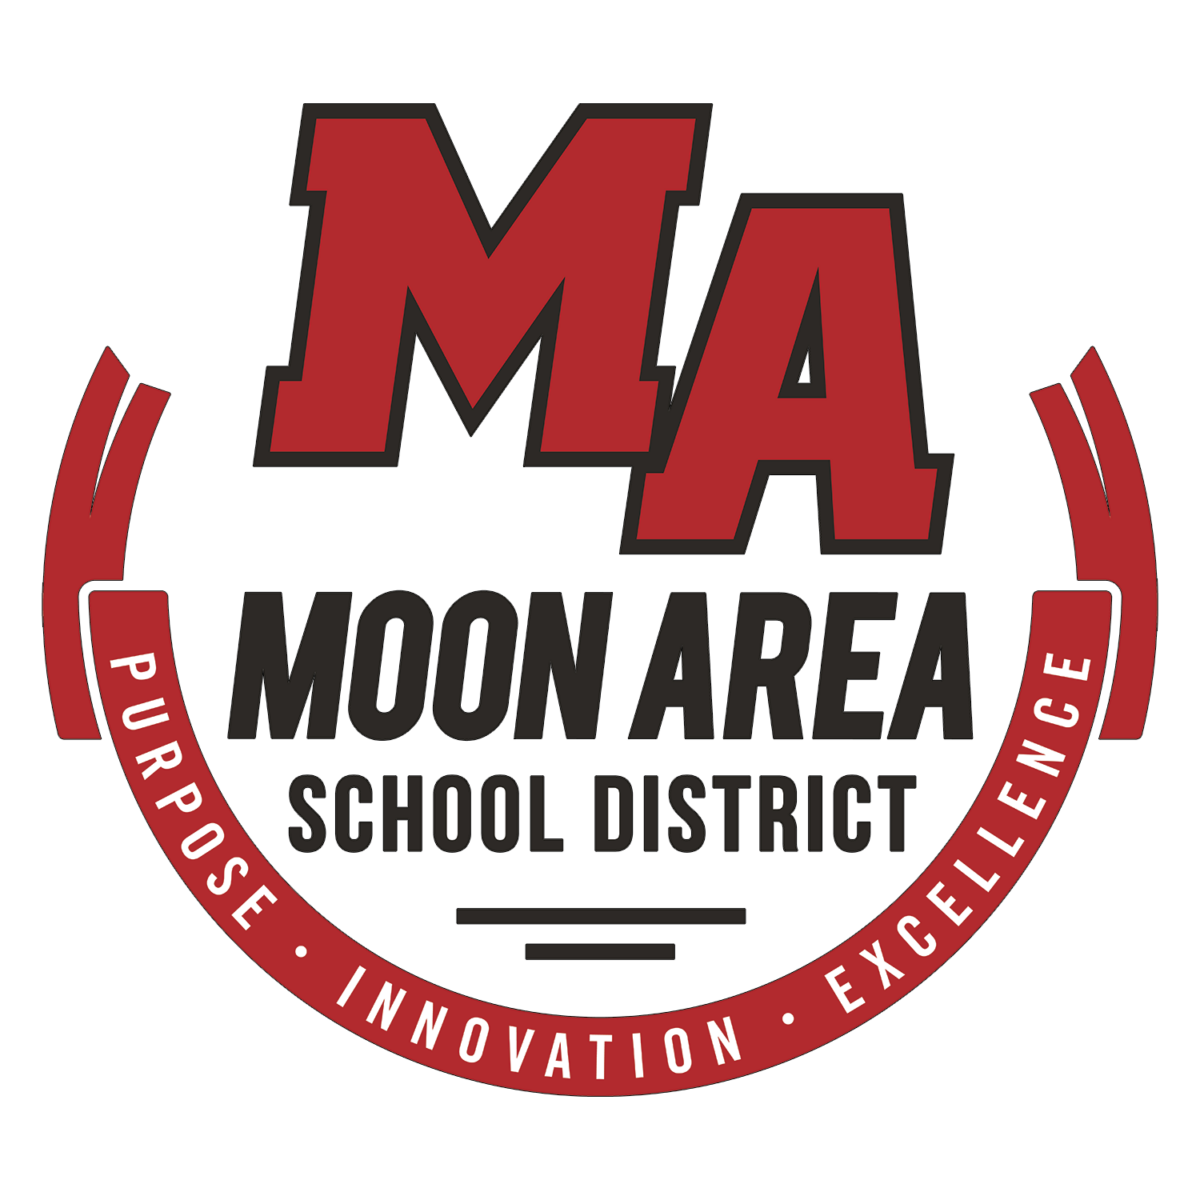 Logotipo del Distrito Escolar del Área de Moon